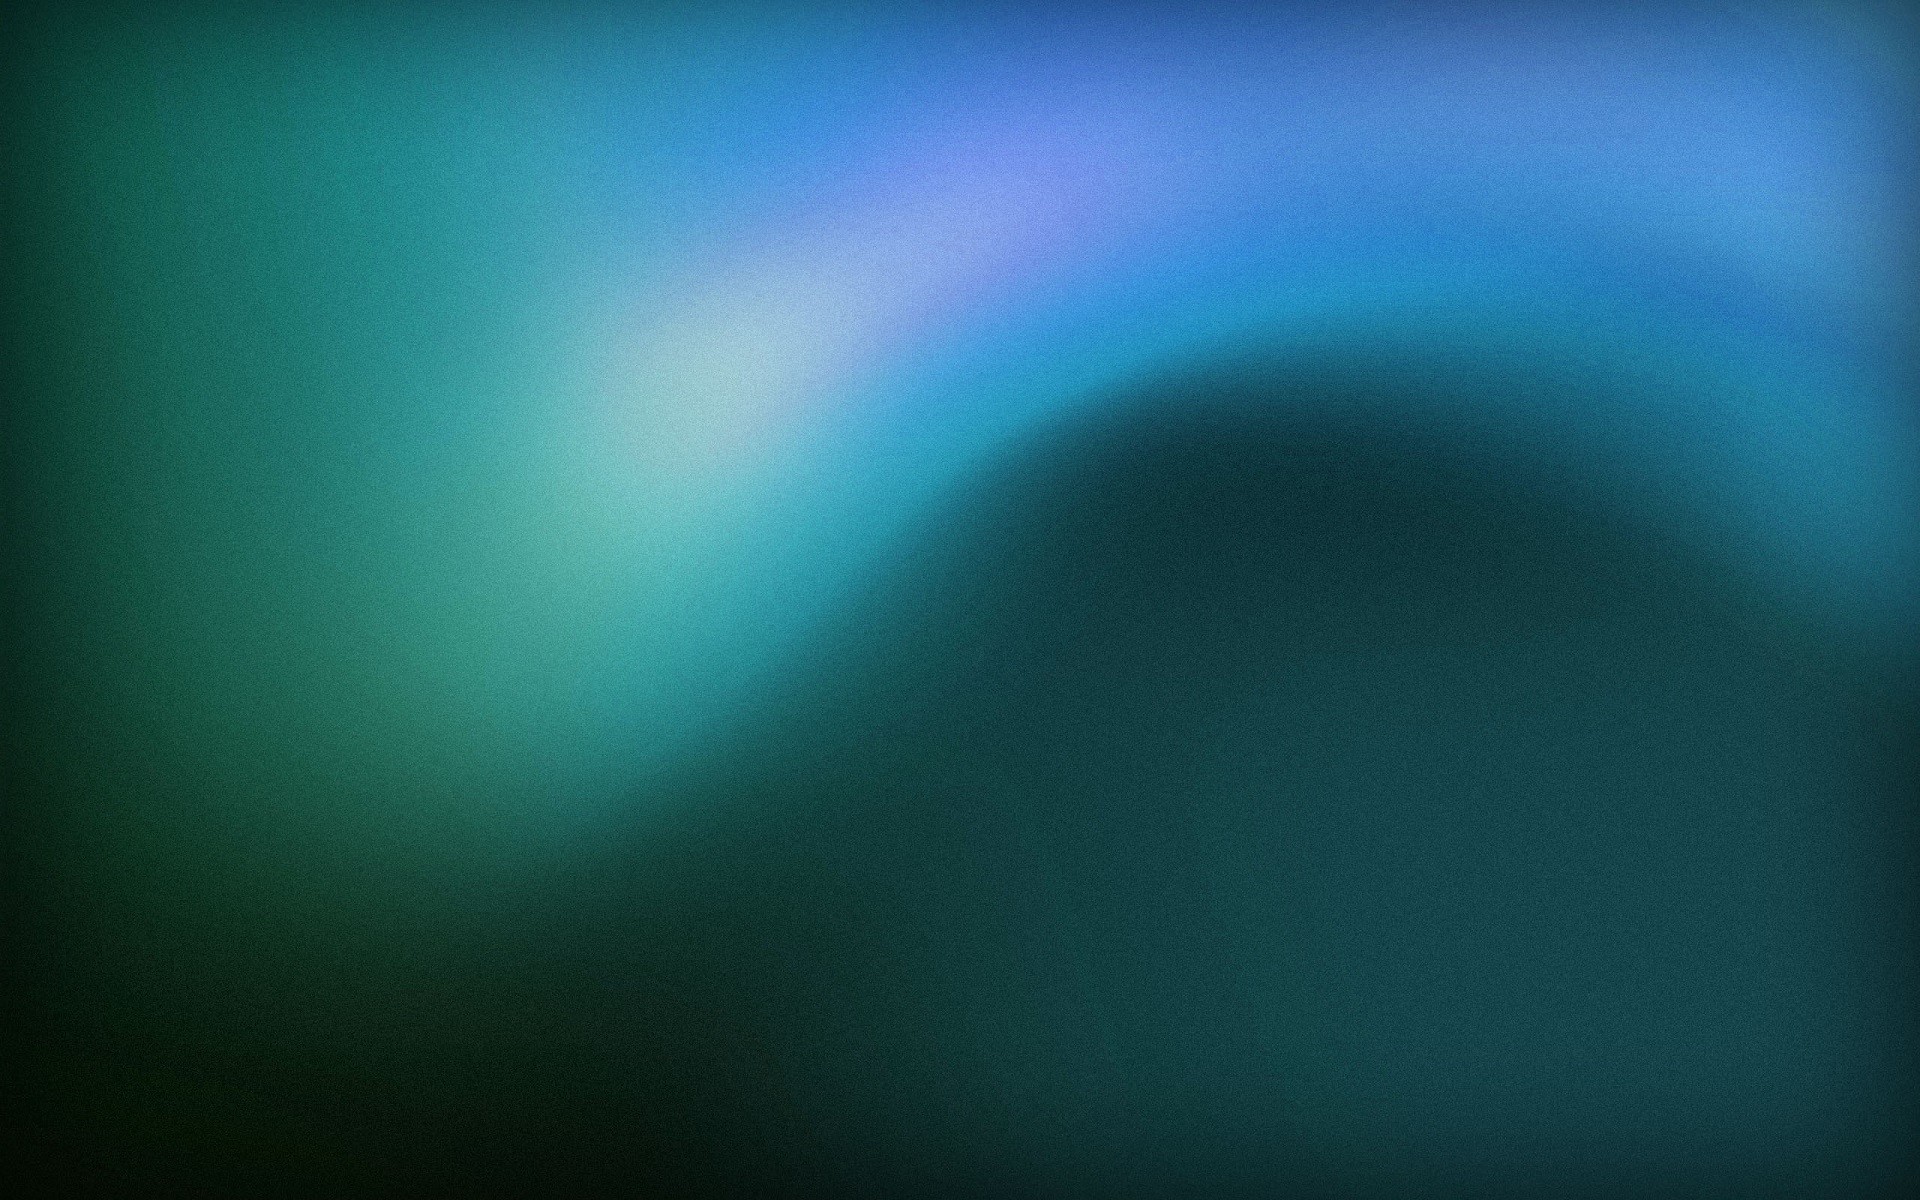 sfondo di ubuntu gnome,blu,verde,turchese,cielo,acqua